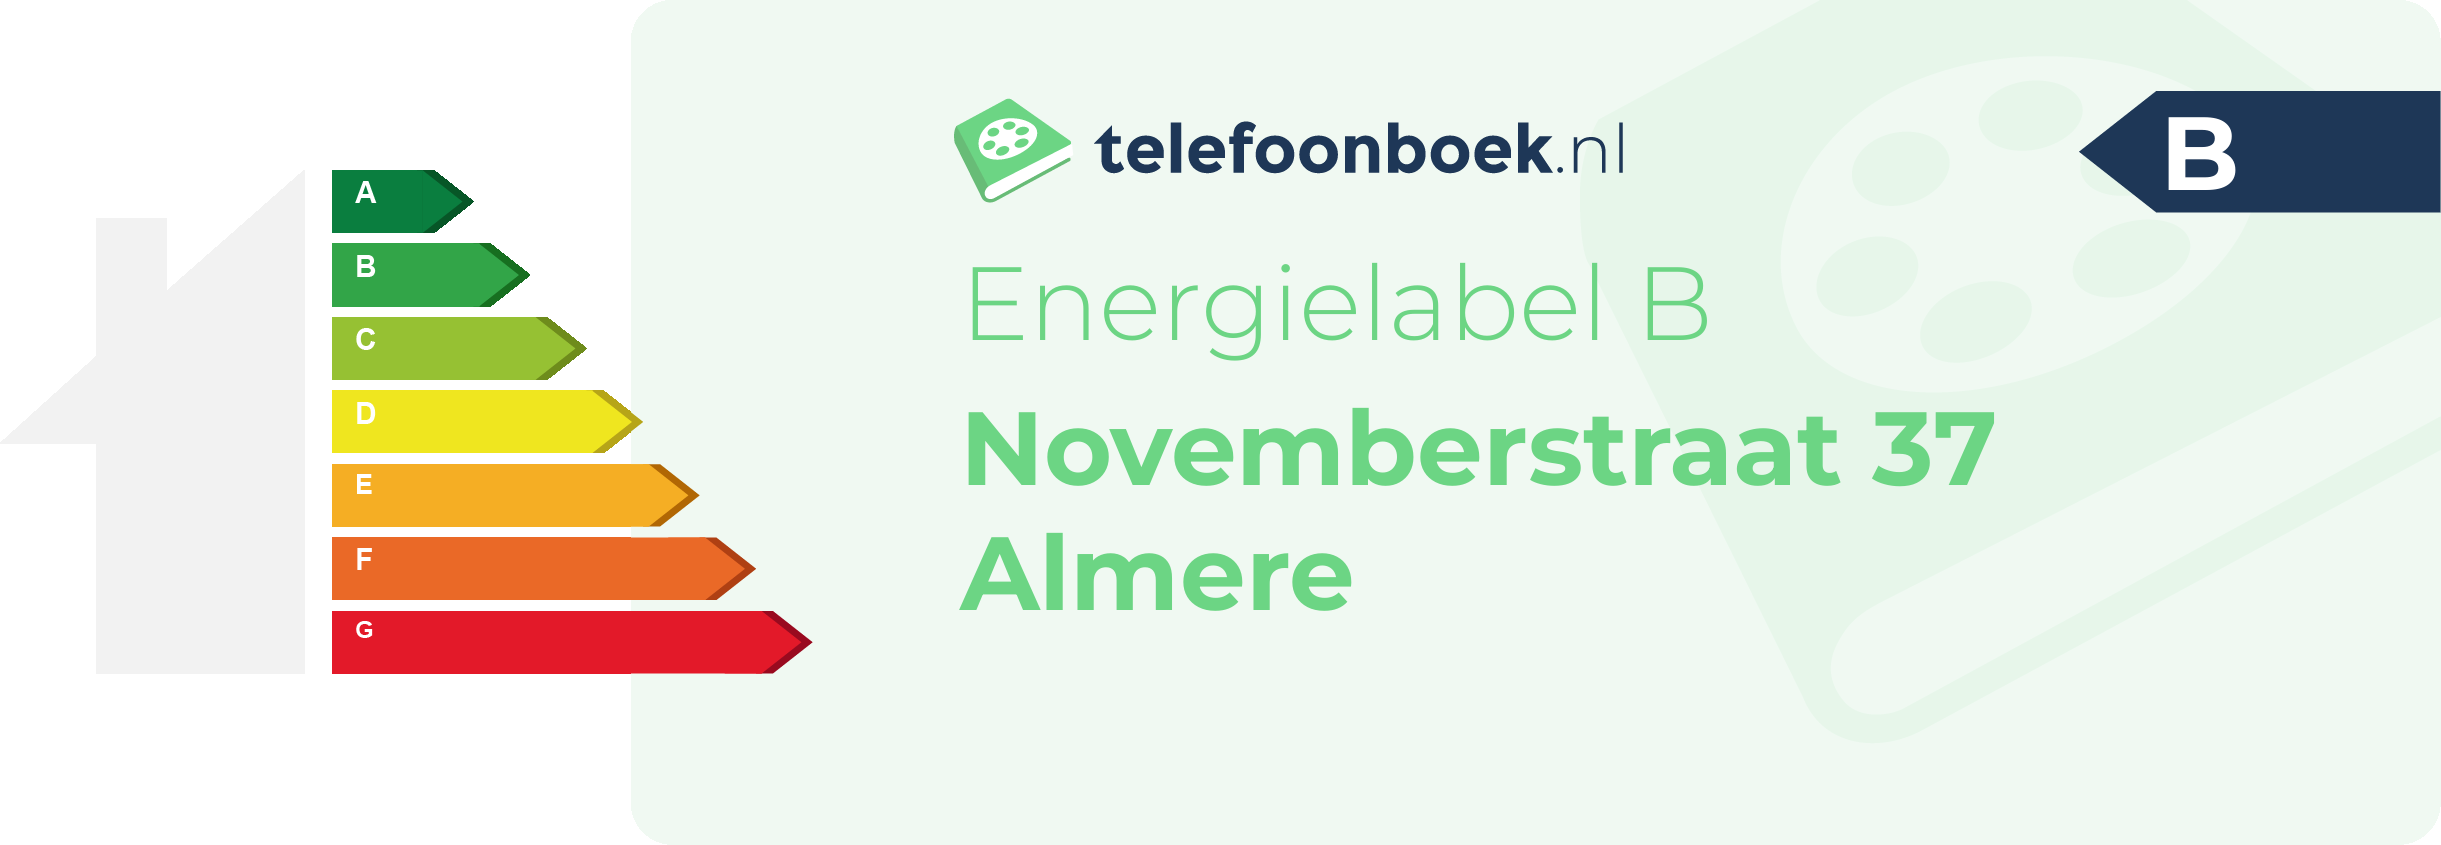 Energielabel Novemberstraat 37 Almere